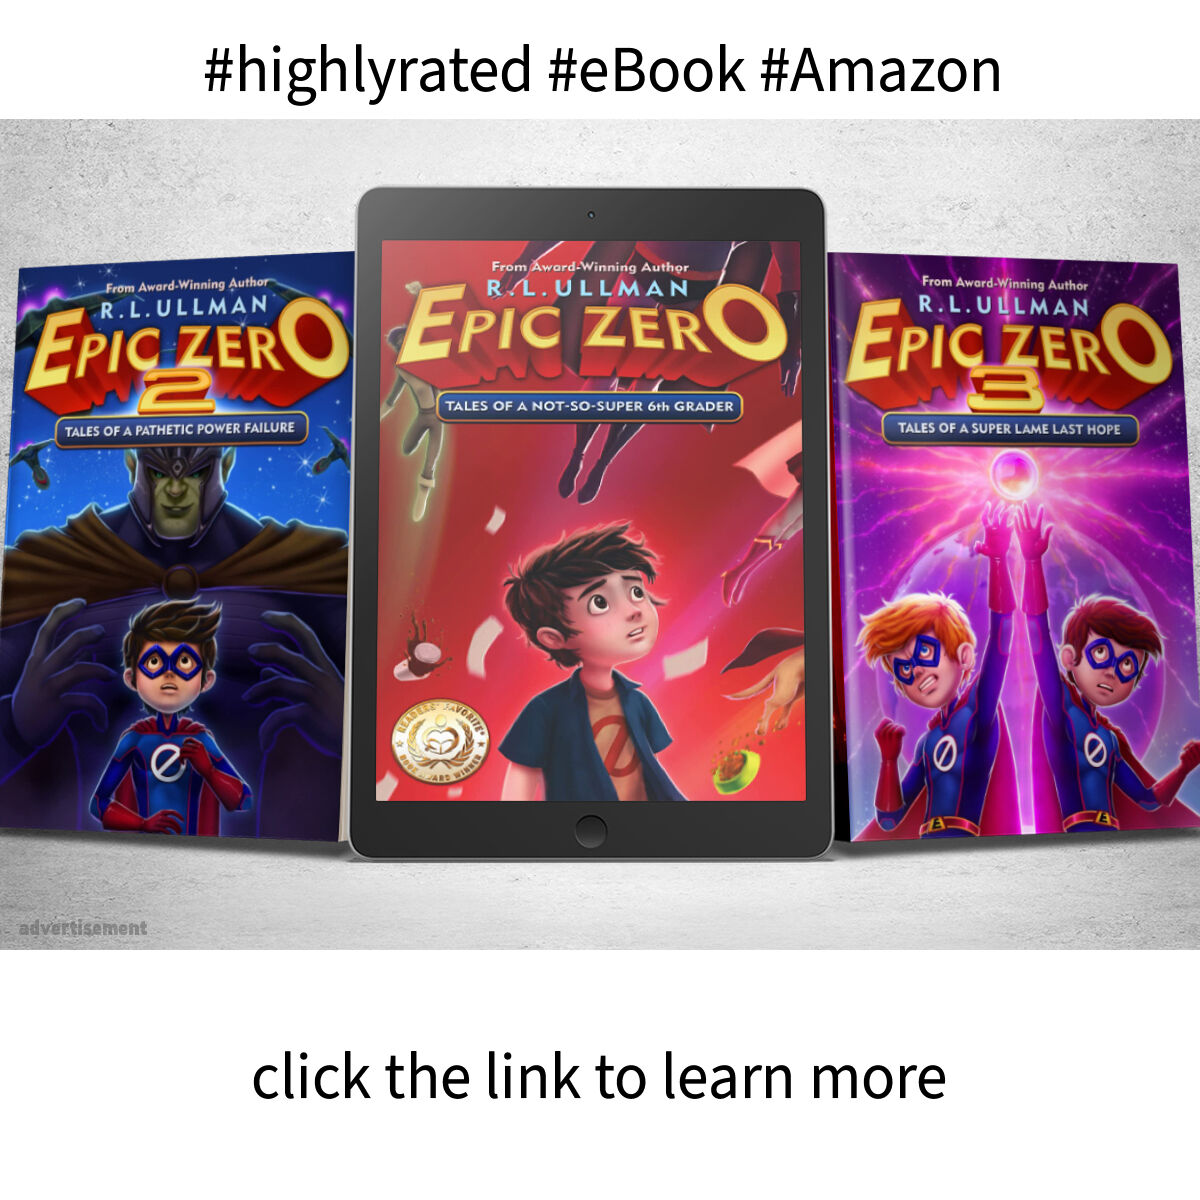 Epic Zero: Books 1-3 by R.L. Ullman amzn.to/3kx7ttl #ebookboxsets #Reads4Kids #UnlimteBooks